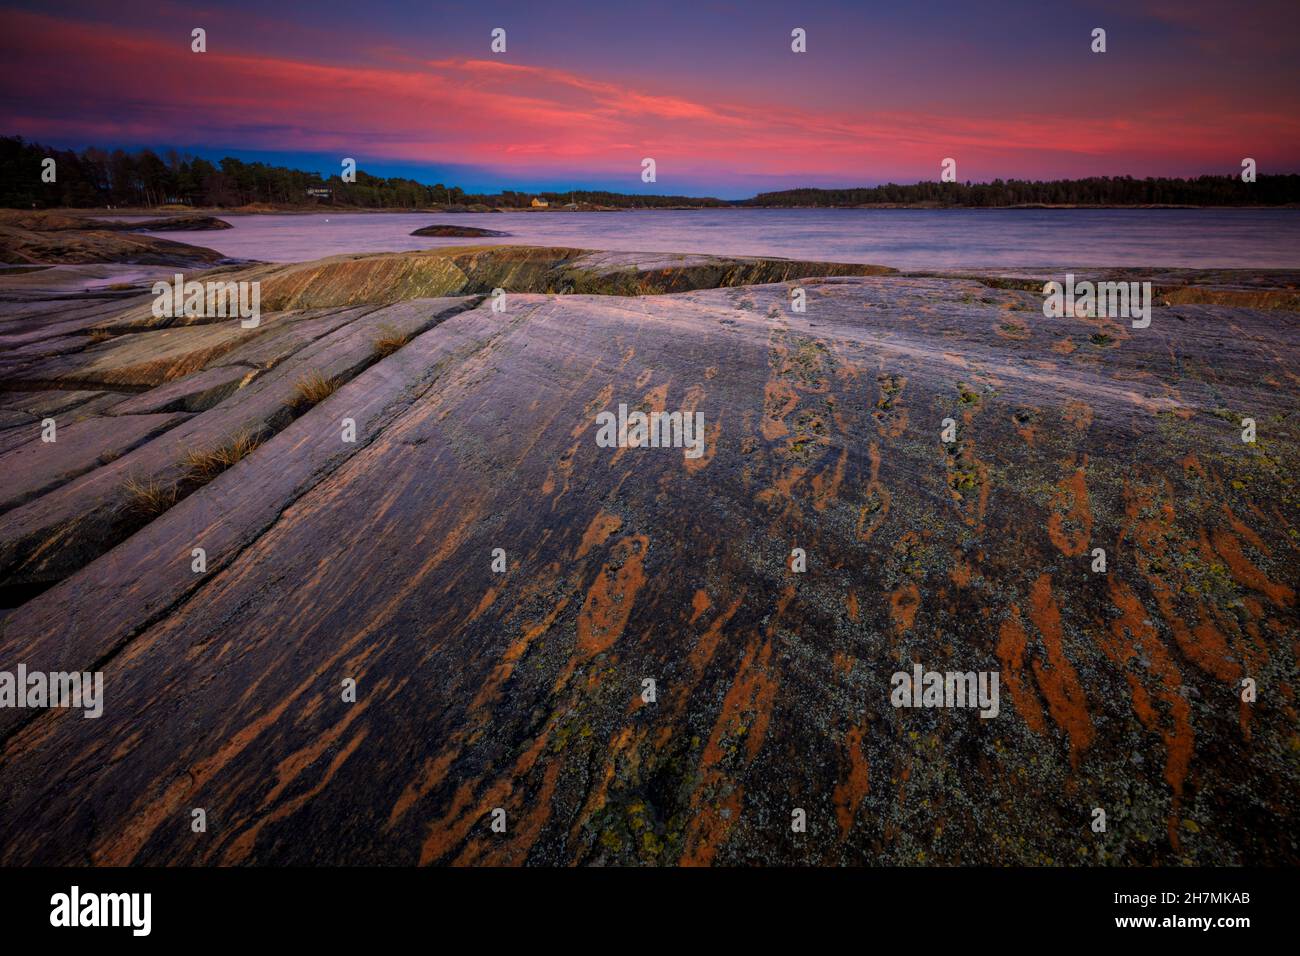 Belle formazioni rocciose e cieli colorati al crepuscolo al forno, lungo la costa dell'Oslofjord, Østfold, Norvegia, Scandinavia. Foto Stock